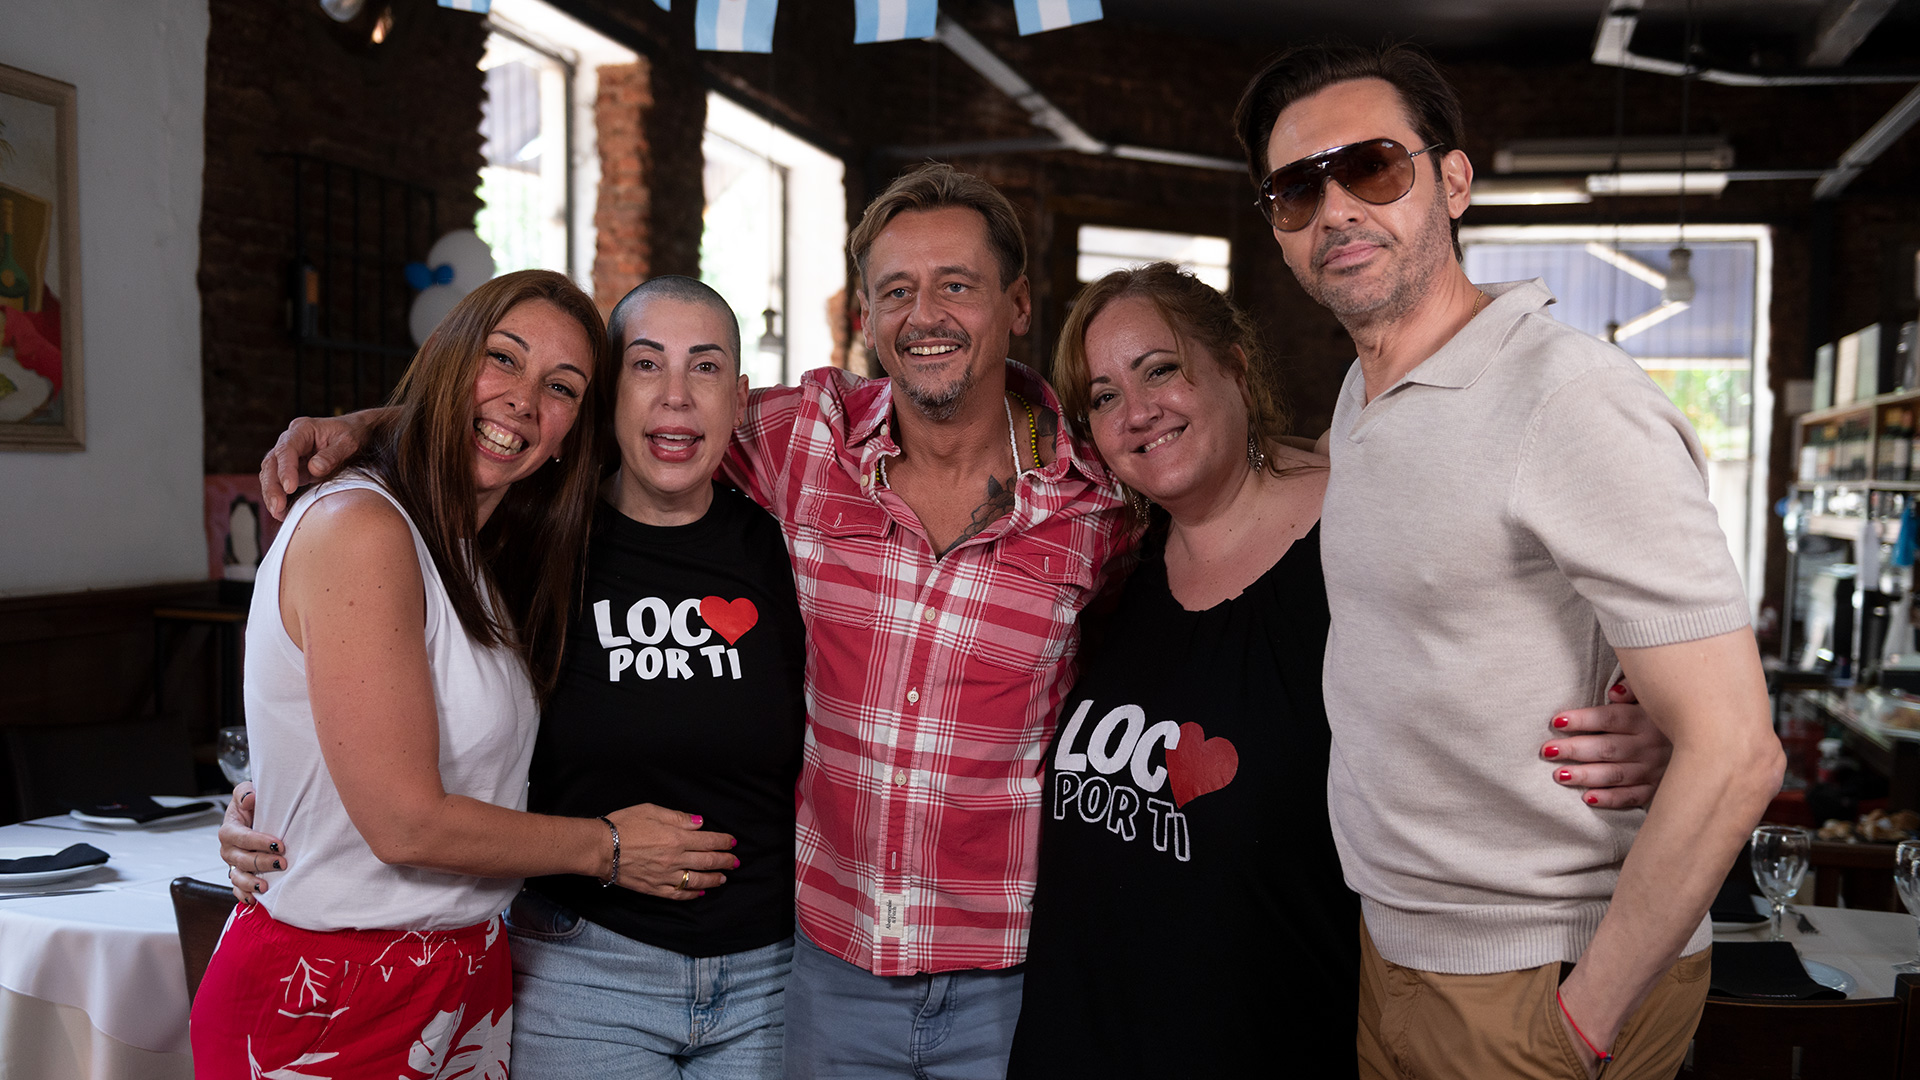 Manolo y José Antonio junto a Dany Campana, Natalia Boffi y Marinés Etcheves, integrantes de fans club Loco por ti